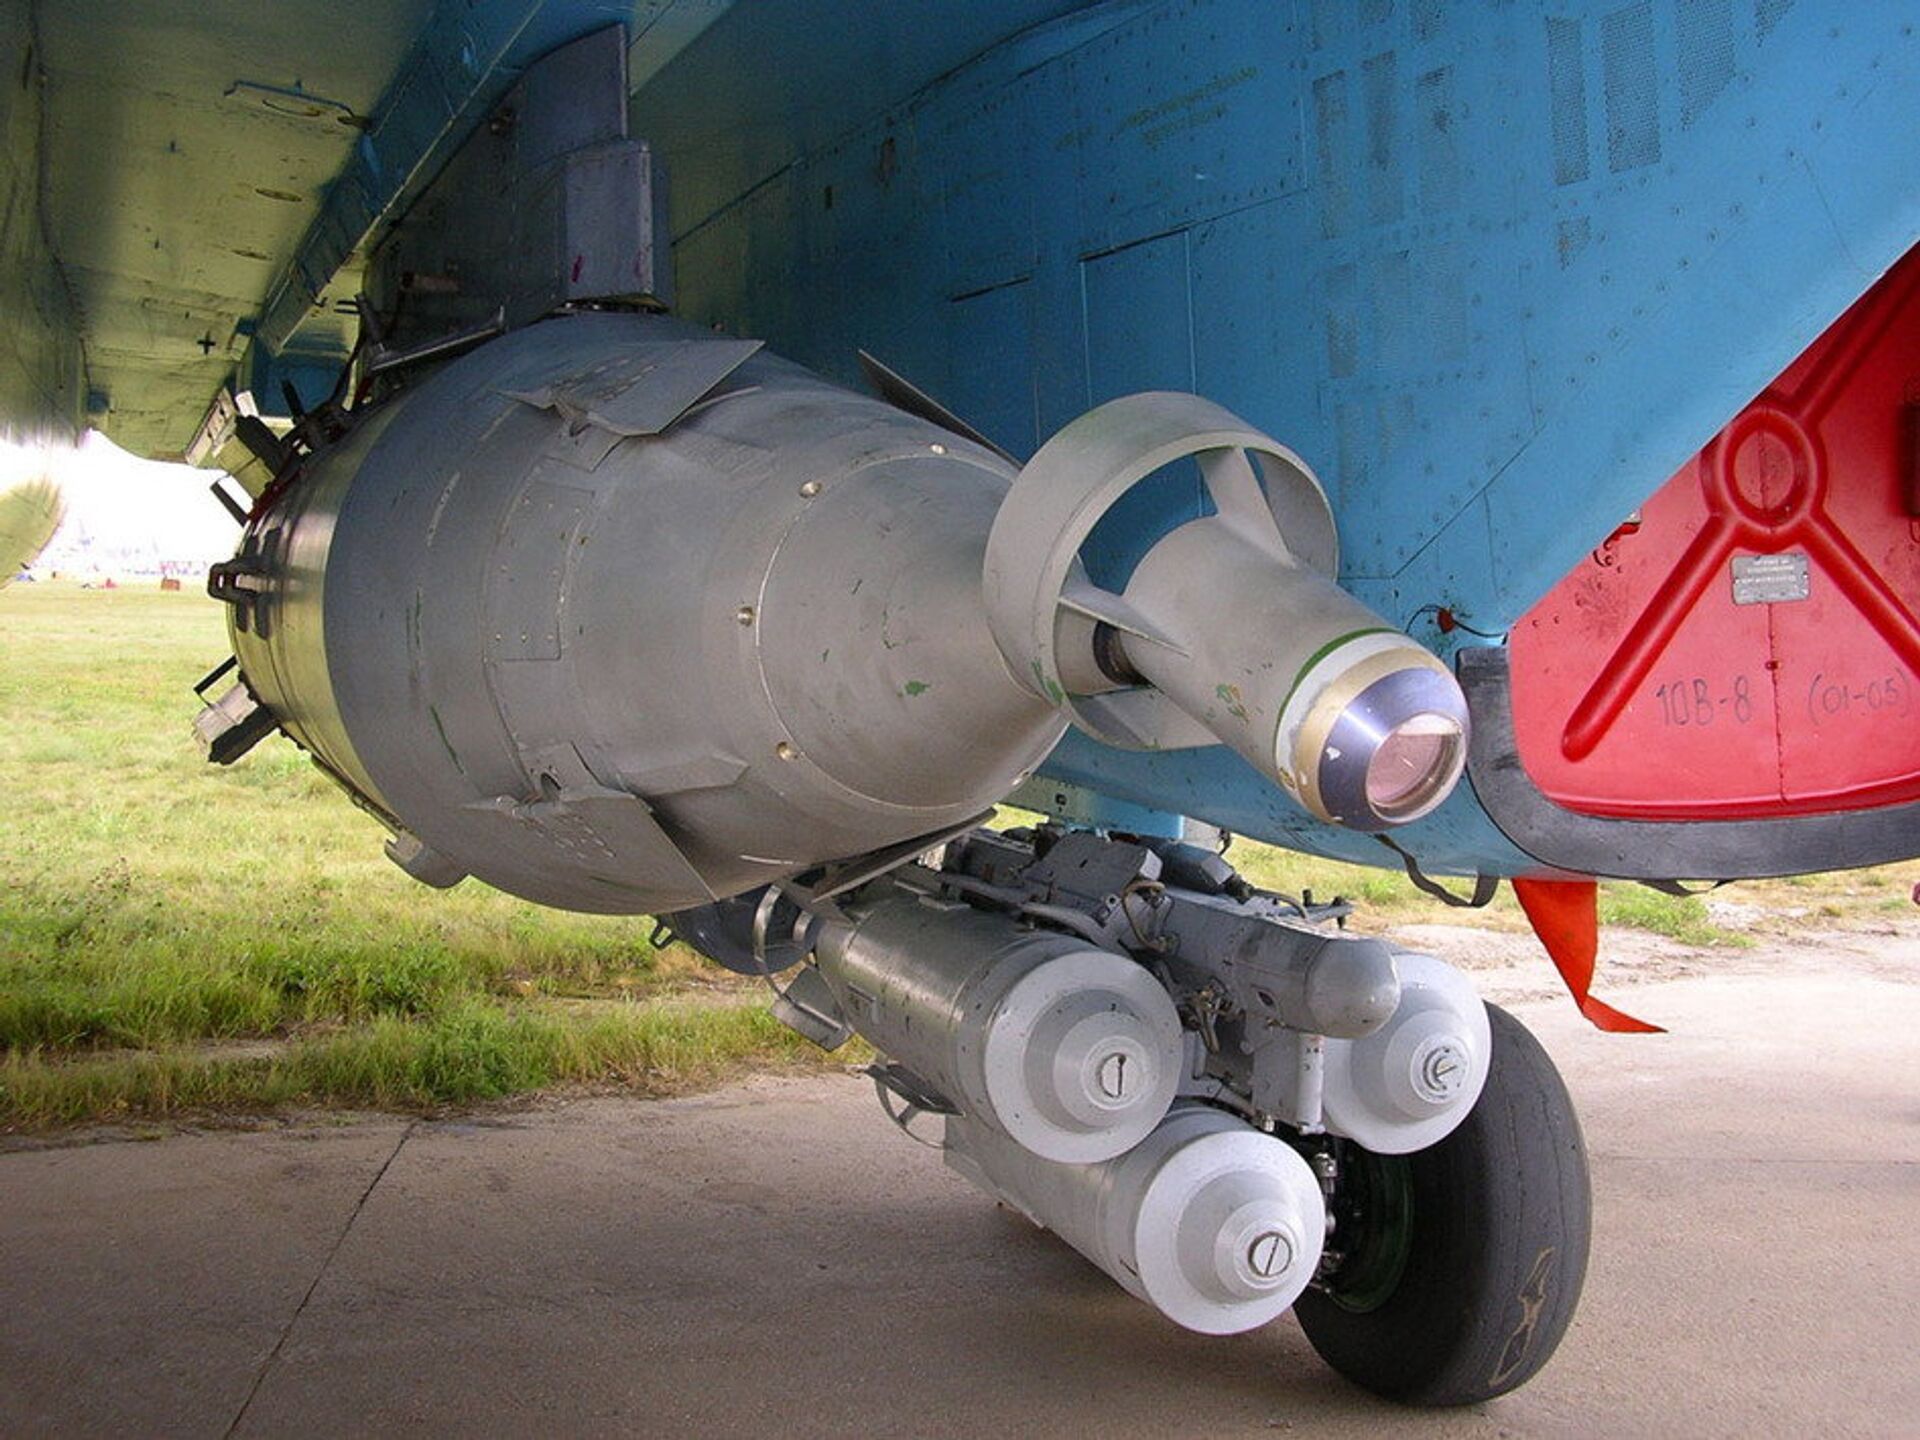 Hiệu quả hơn tên lửa dẫn đường. Không quân Nga được trang bị những vũ khí nào - Sputnik Việt Nam, 1920, 02.02.2021